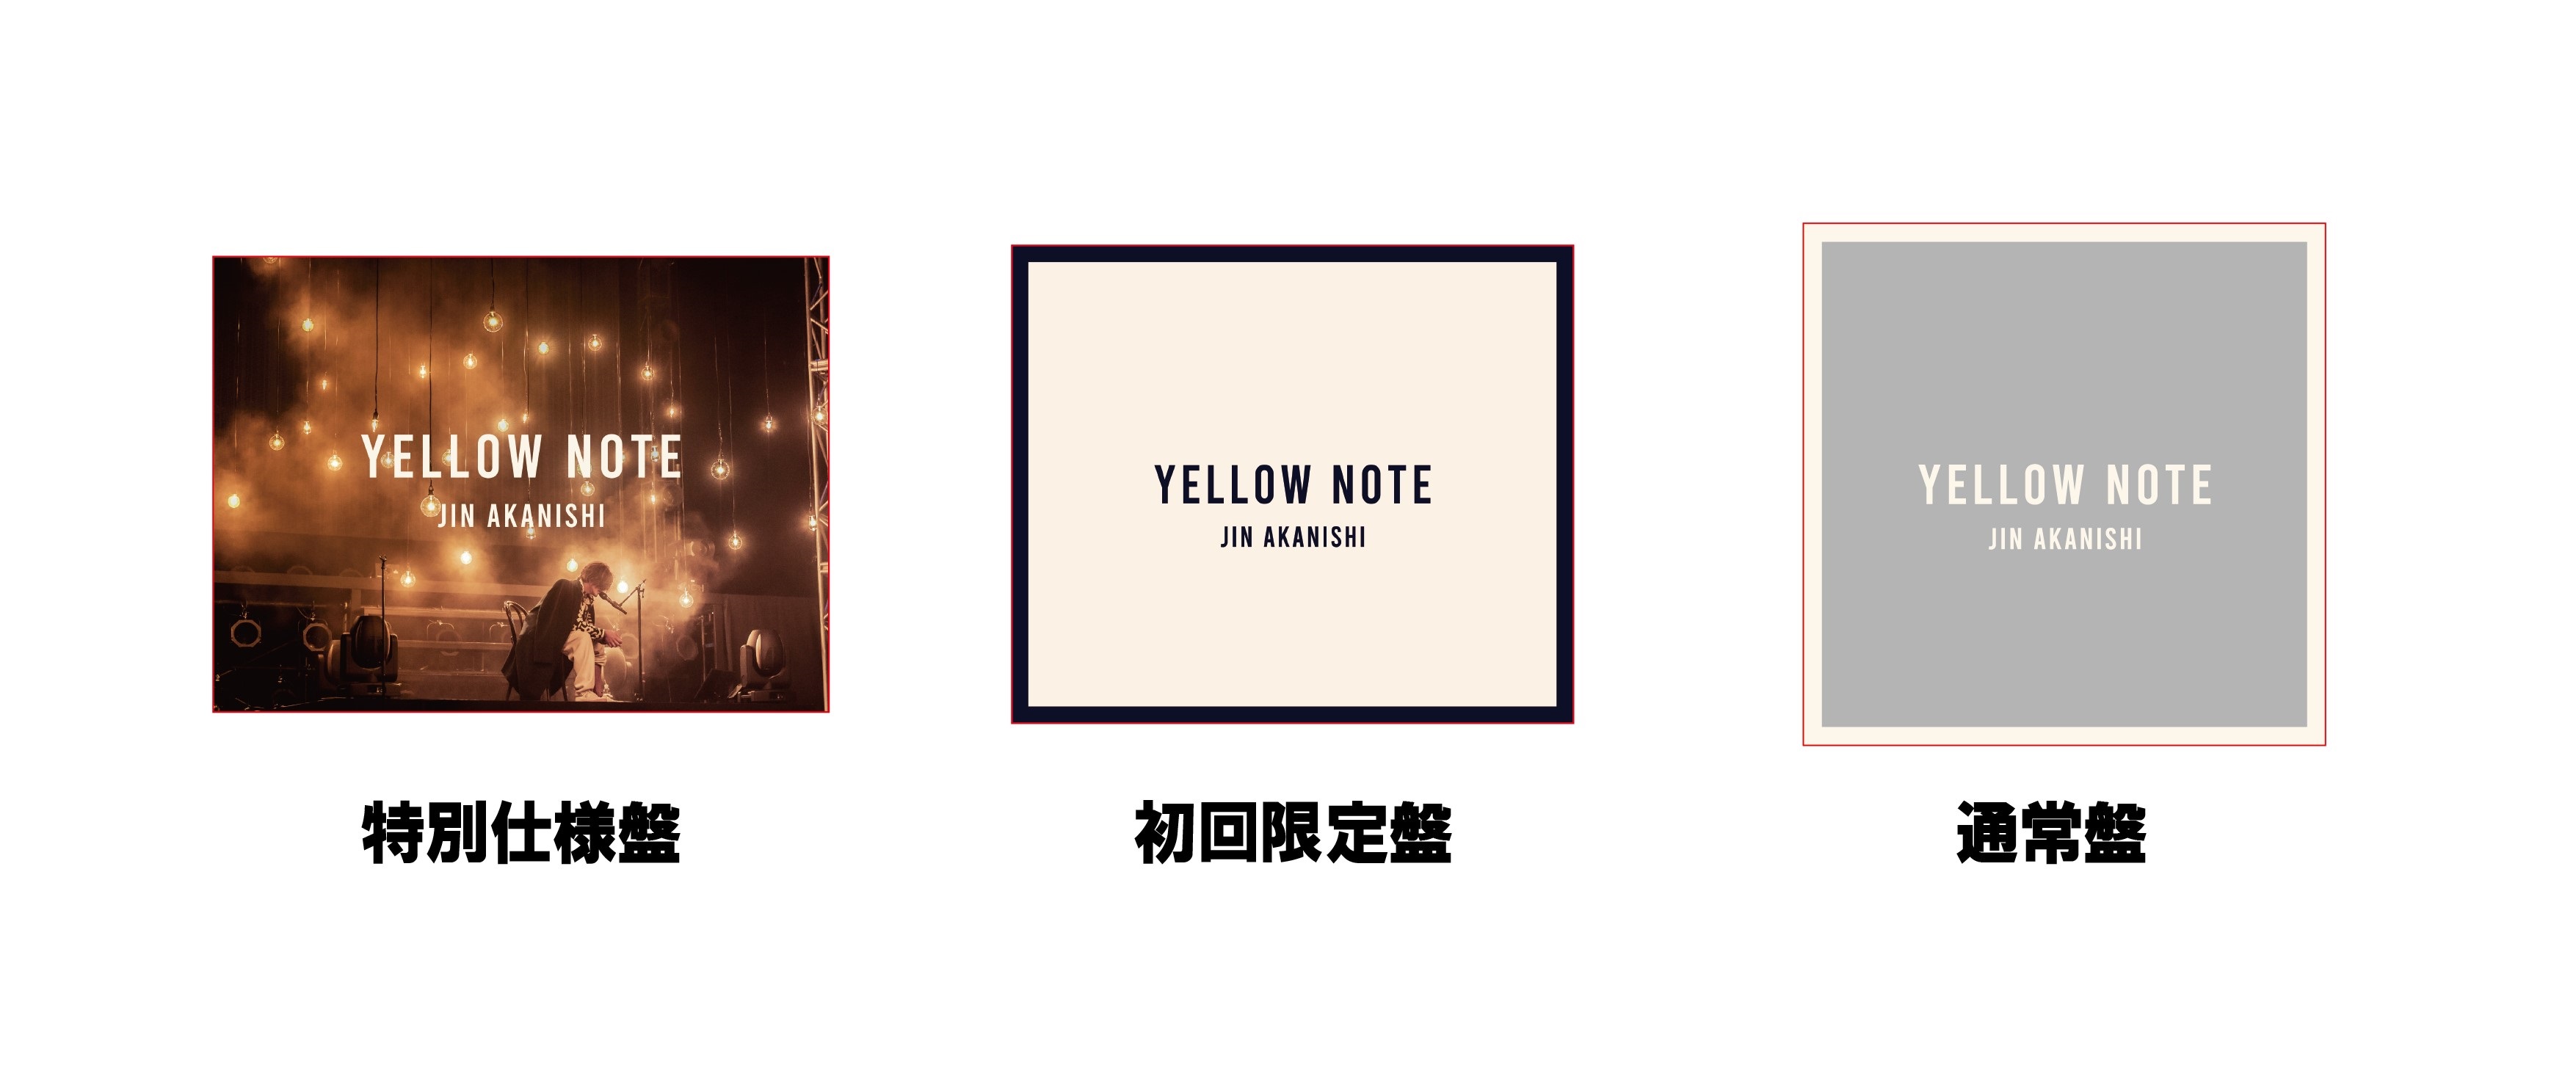 赤西仁 アルバム『YELLOW NOTE』 12/27発売《@Loppi・HMV限定特典あり 